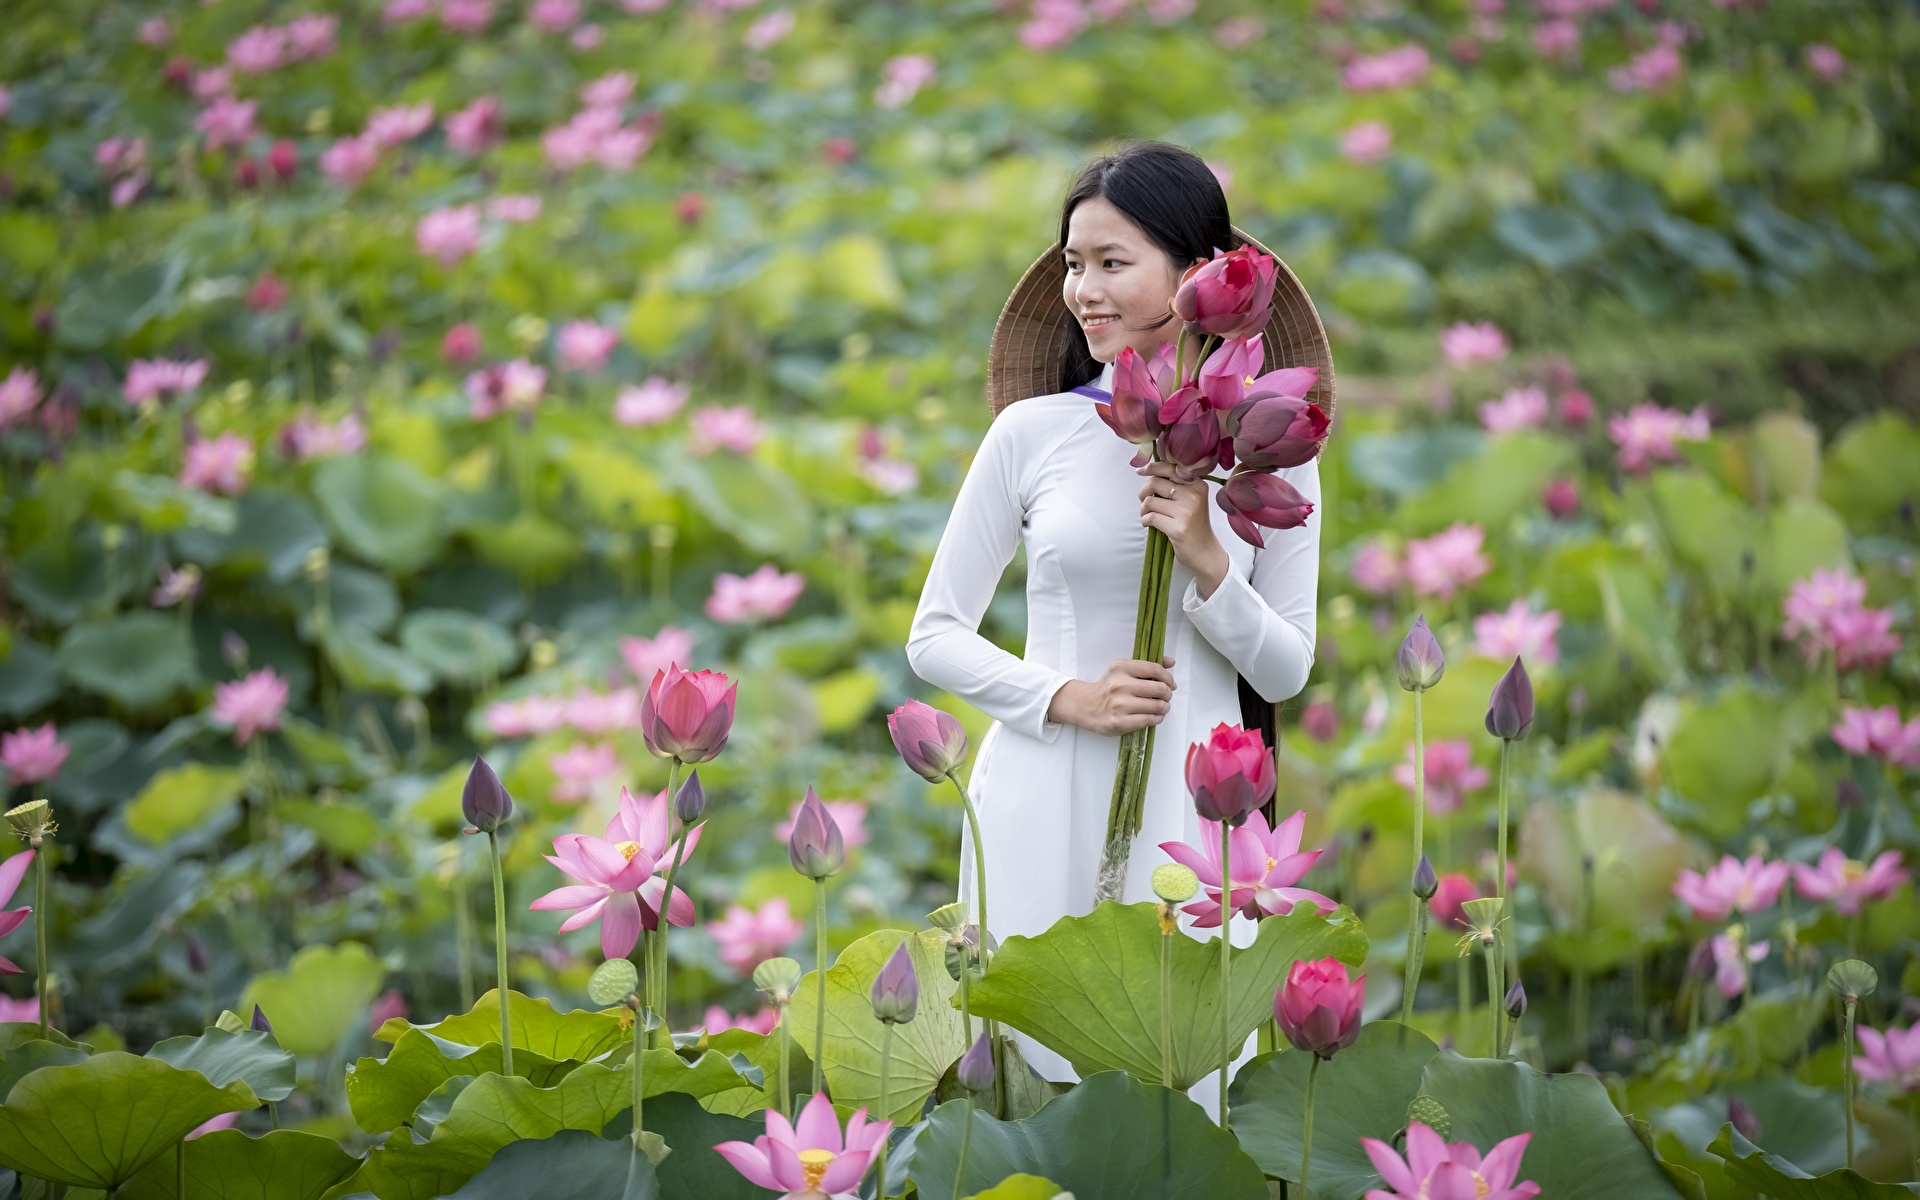 Hoa sen là một trong những loài hoa có ý nghĩa lớn trong văn hoá và tôn giáo Việt Nam. Không chỉ có tác dụng trong việc cải thiện sức khỏe, hoa sen còn mang lại thông điệp của tình yêu và sự thanh tịnh. Hãy xem các hình ảnh đẹp liên quan đến hoa sen để cảm nhận sự tinh tế và độc đáo của loài hoa này.